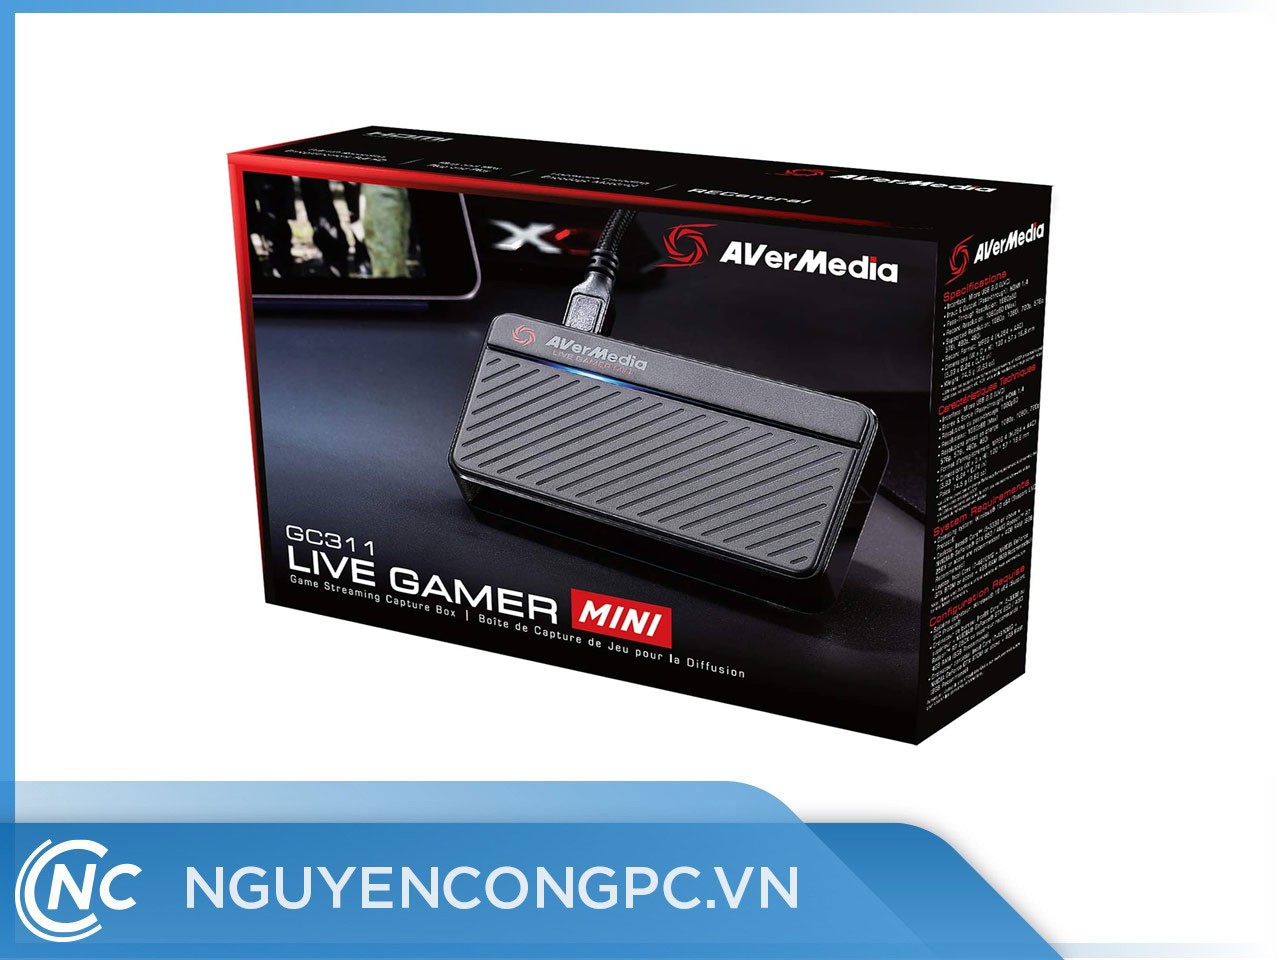 Thiết bị thu hình AverMedia Live Gamer Mini - GC311